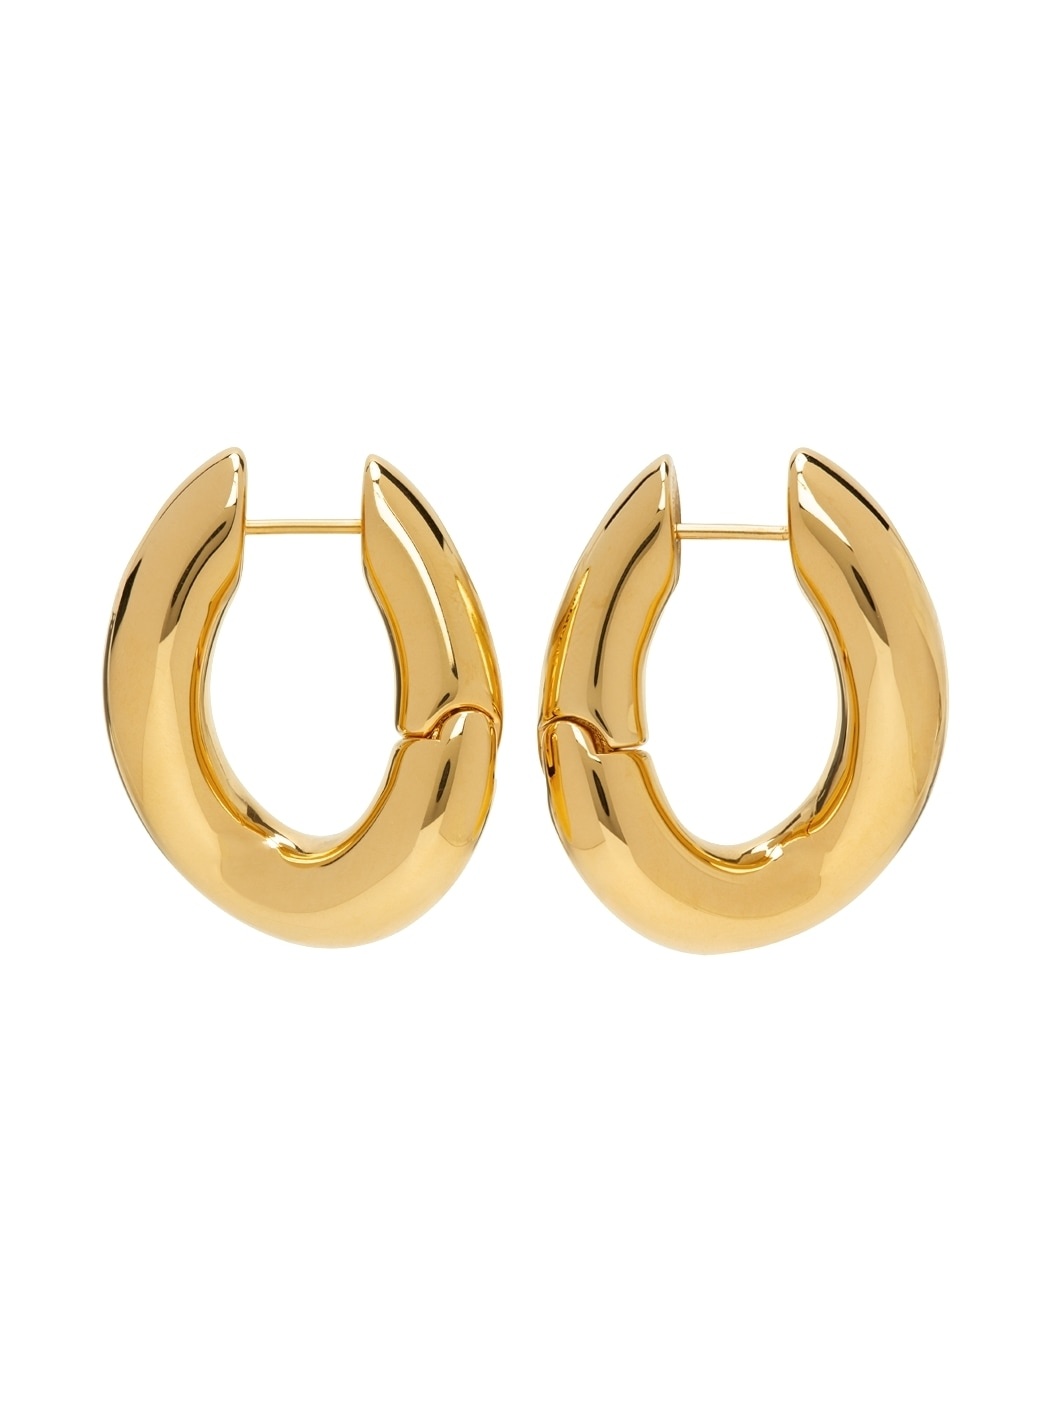 Gold Loop Earrings - 1